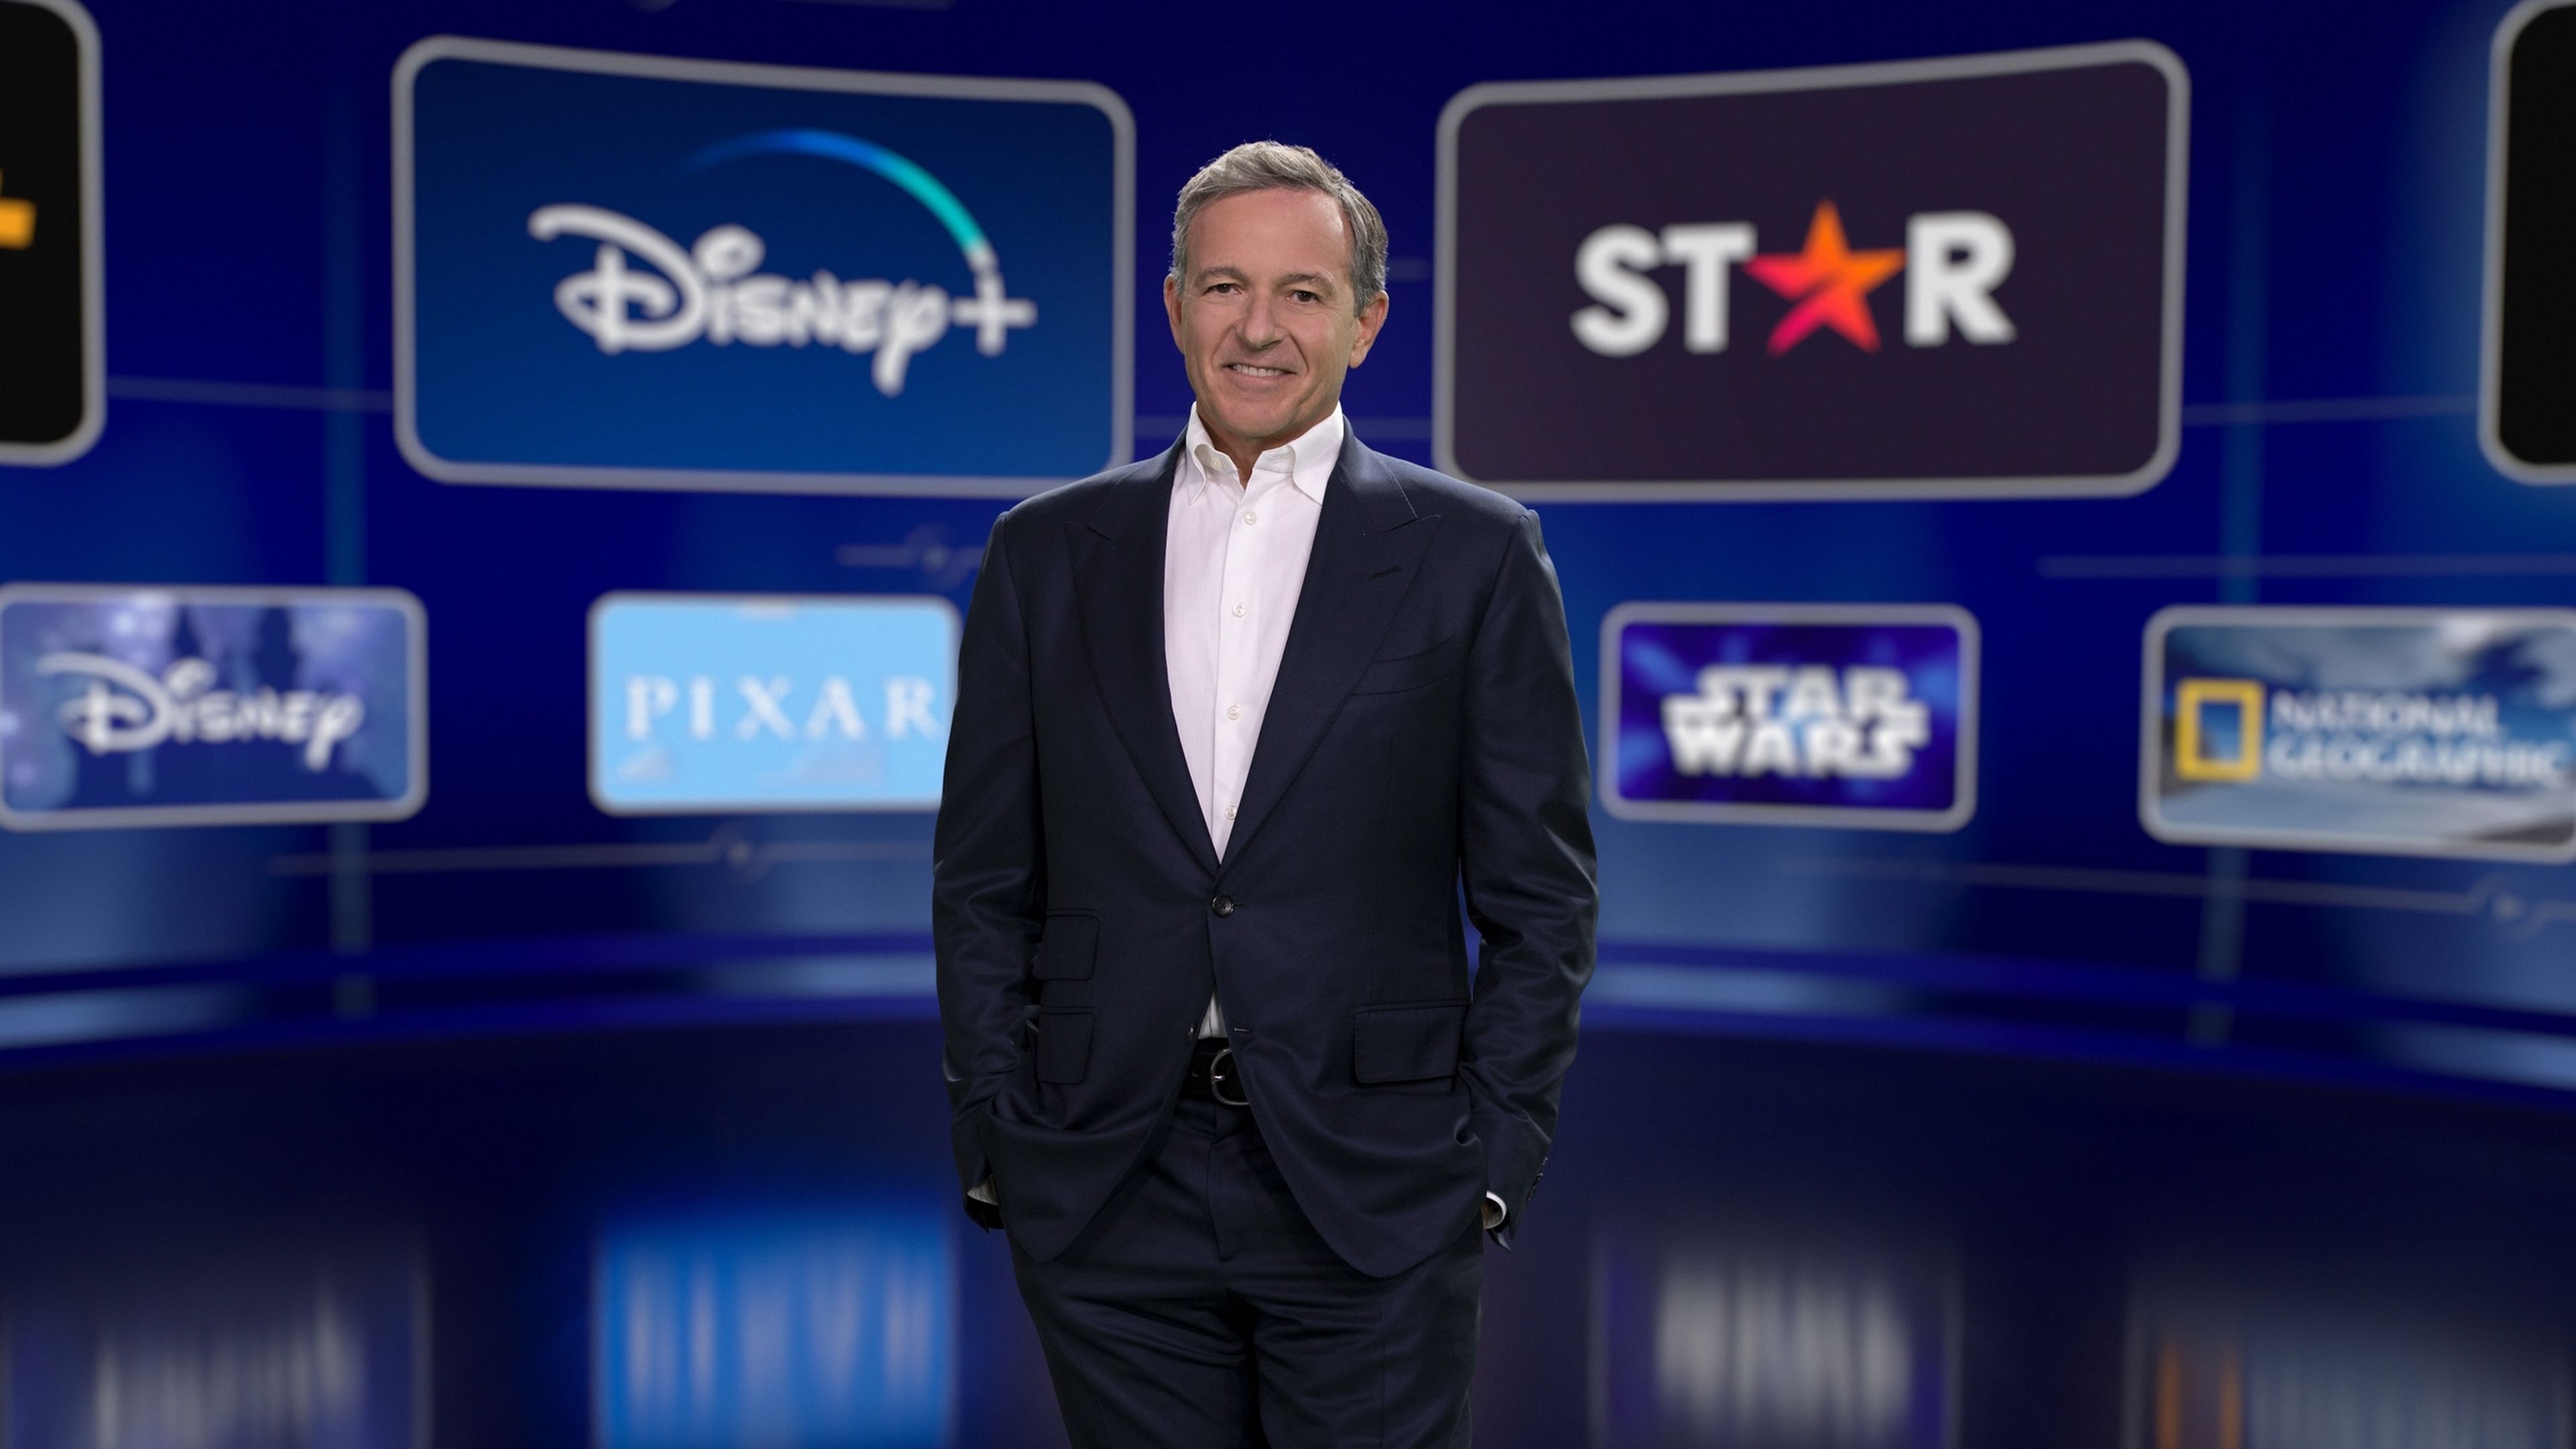 El ex CEO de Disney vaticina las plataformas de streaming que desaparecerán, y son malas noticias para los fans de los dragones